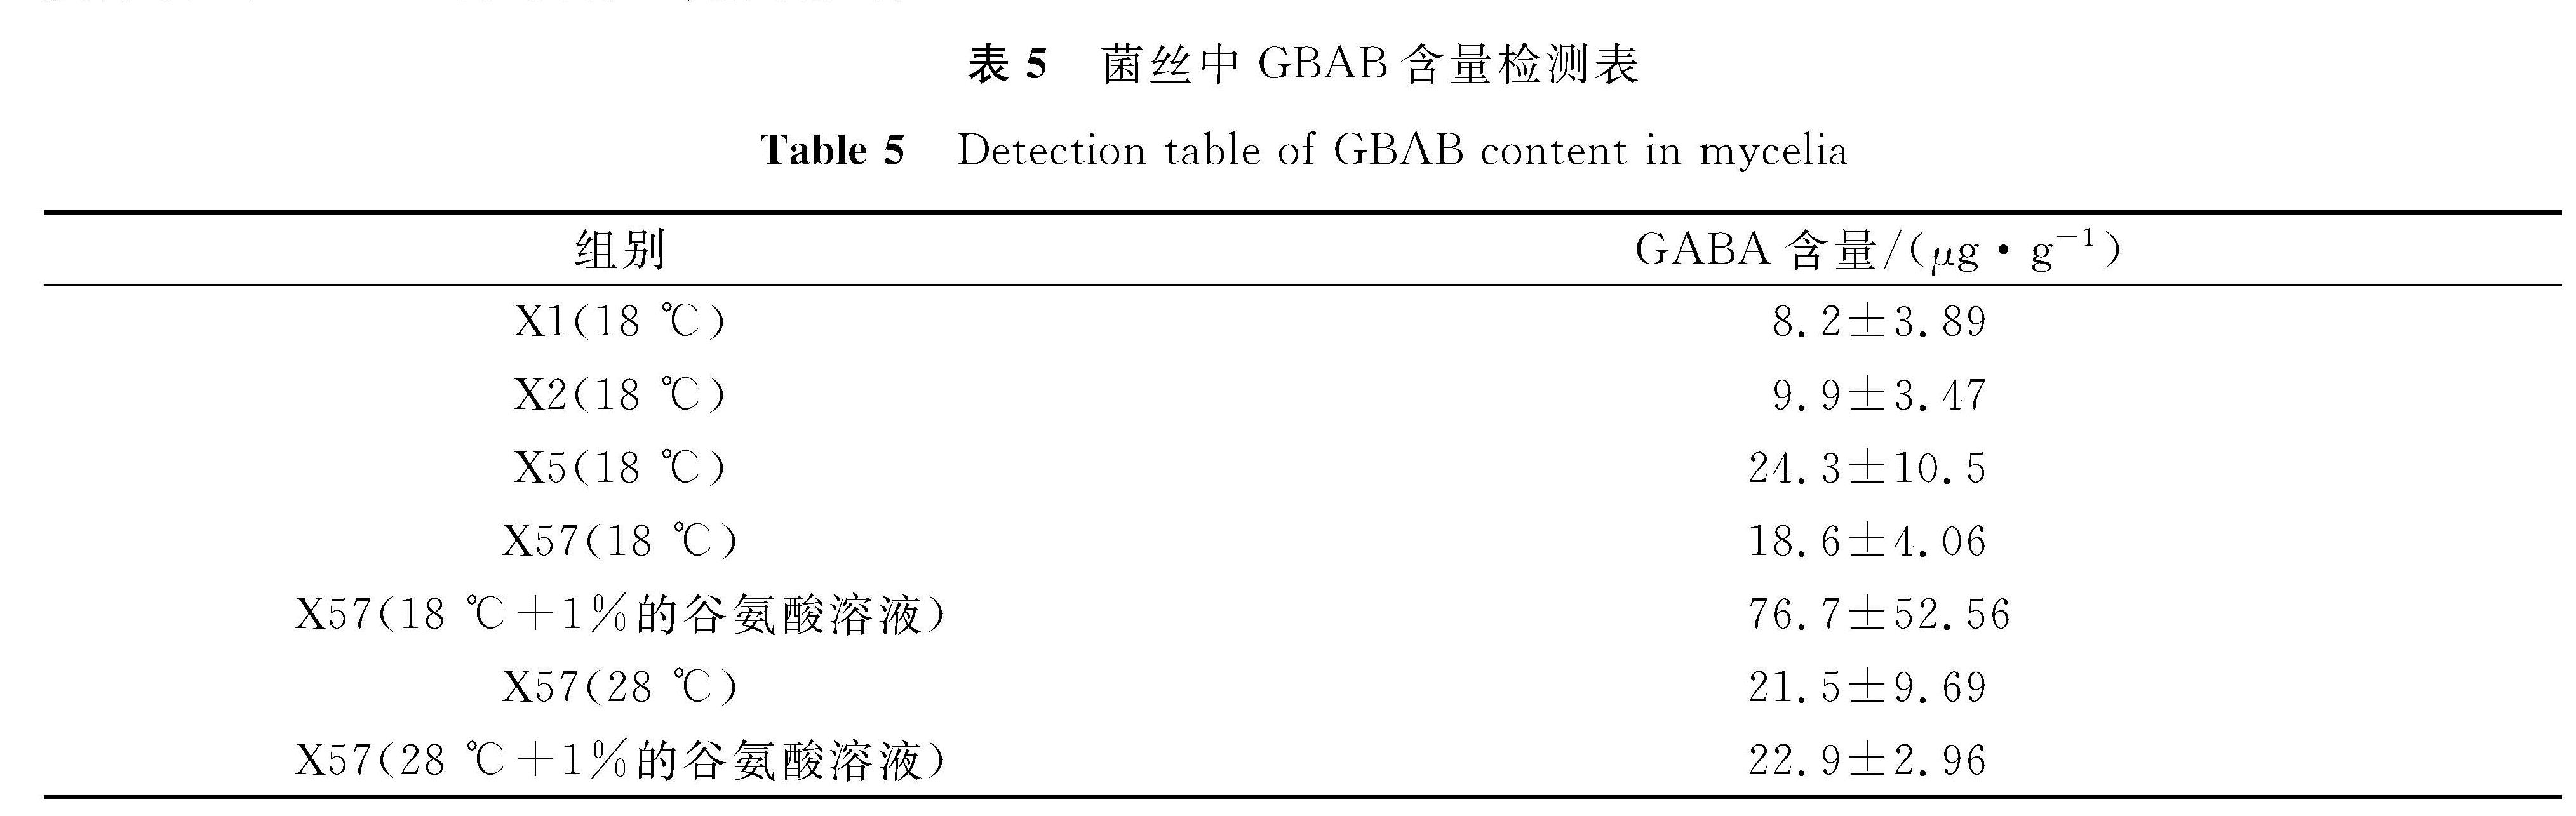 表5 菌丝中GBAB含量检测表<br/>Table 5 Detection table of GBAB content in mycelia